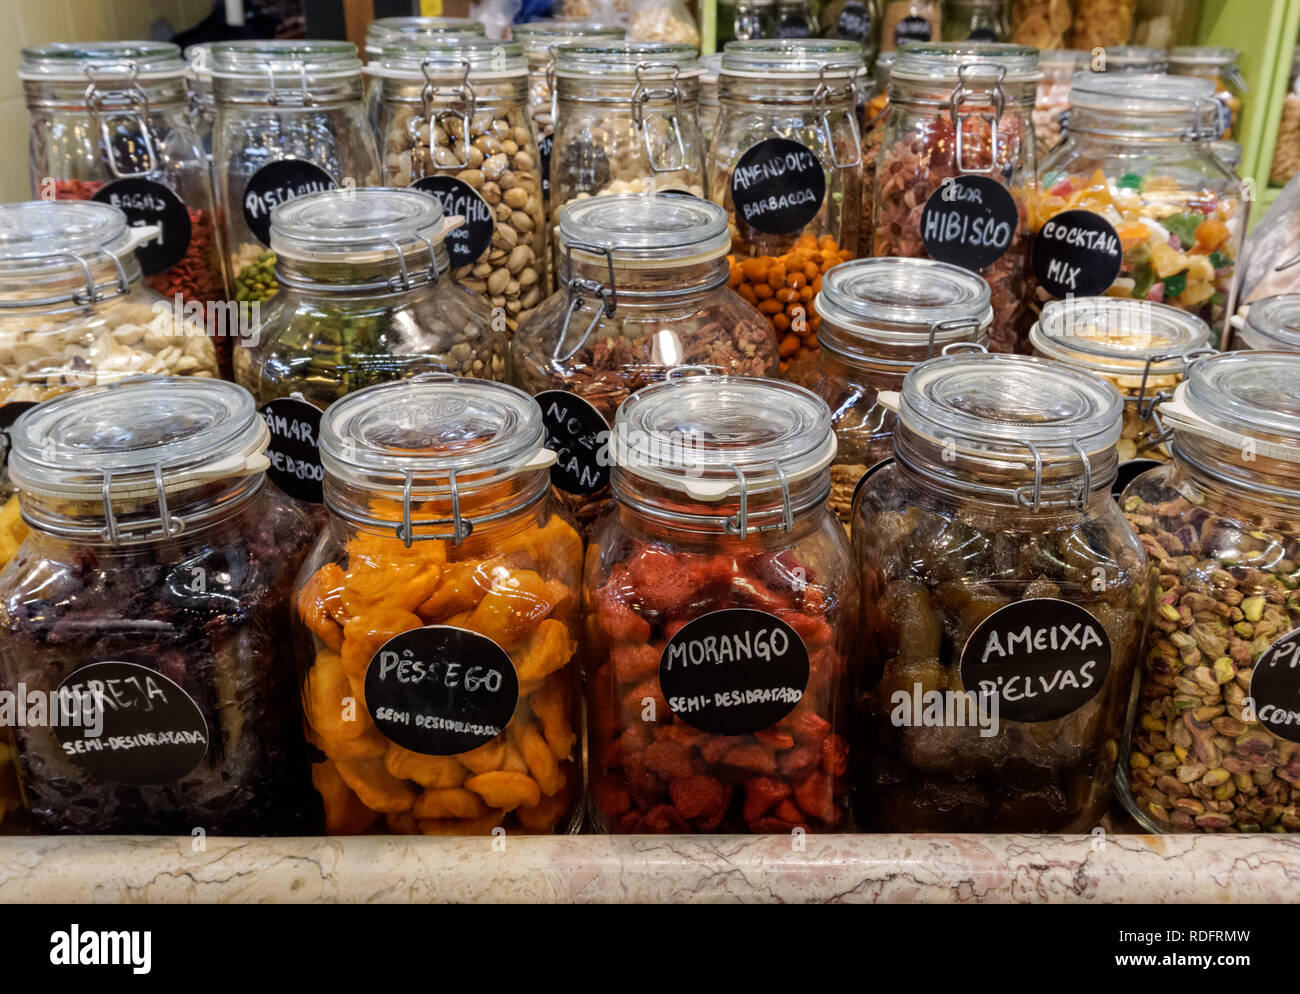 Frische Lebensmittel in Gläsern im Campo de Ourique Markt in Lissabon, Portugal. Stockfoto